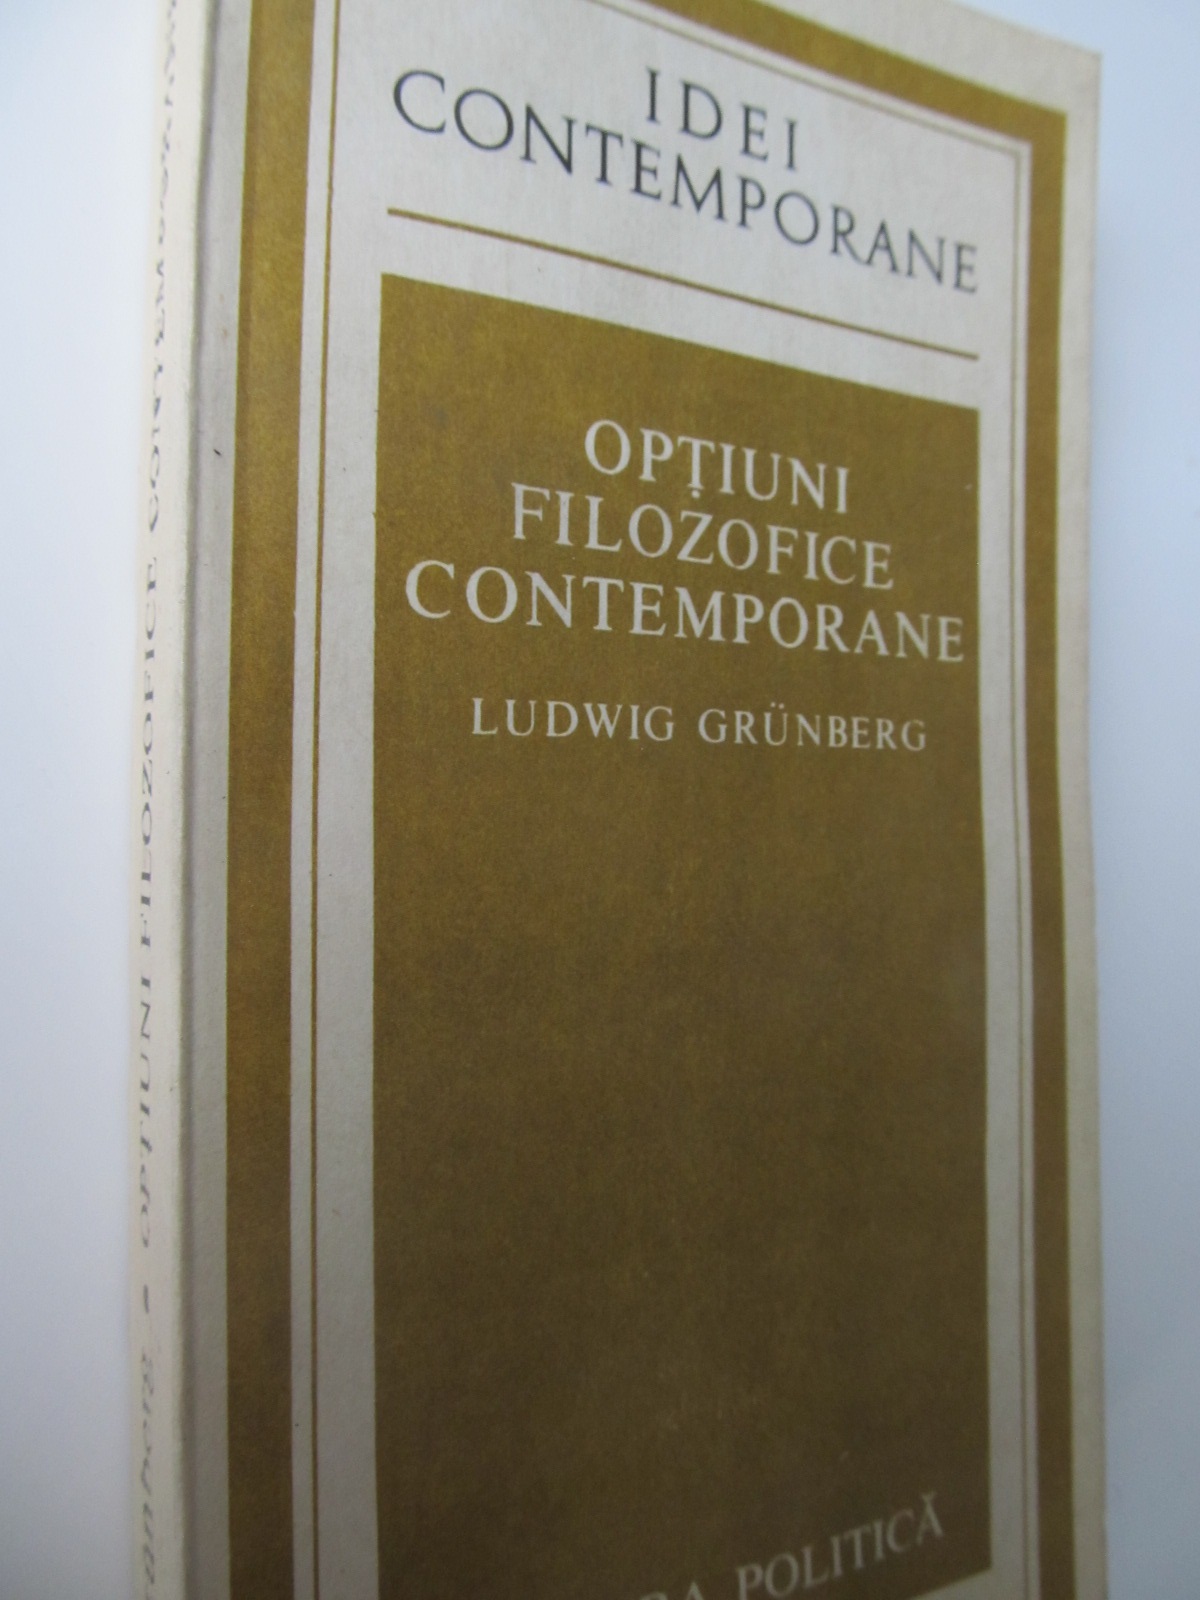 Optiuni filozofice contemporane - Ludwig Grunberg | Detalii carte